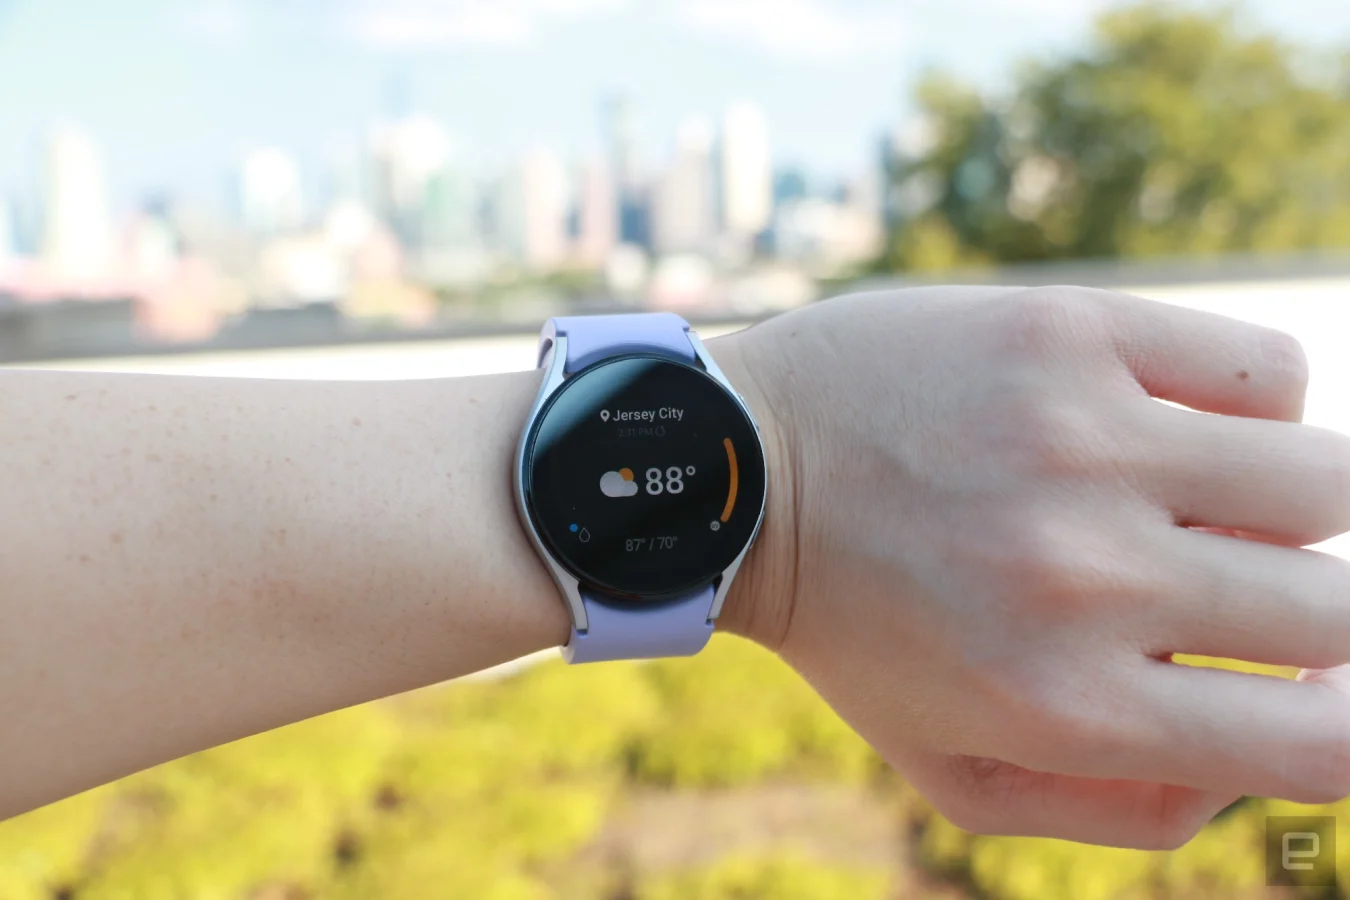 La Samsung Galaxy Watch 5 au poignet, affichant l'application météo.  Il indique Jersey City en haut, suivi de 88 degrés dans une police plus grande occupant la majorité de la page, et d'un nuage avec une icône de soleil sur sa gauche.